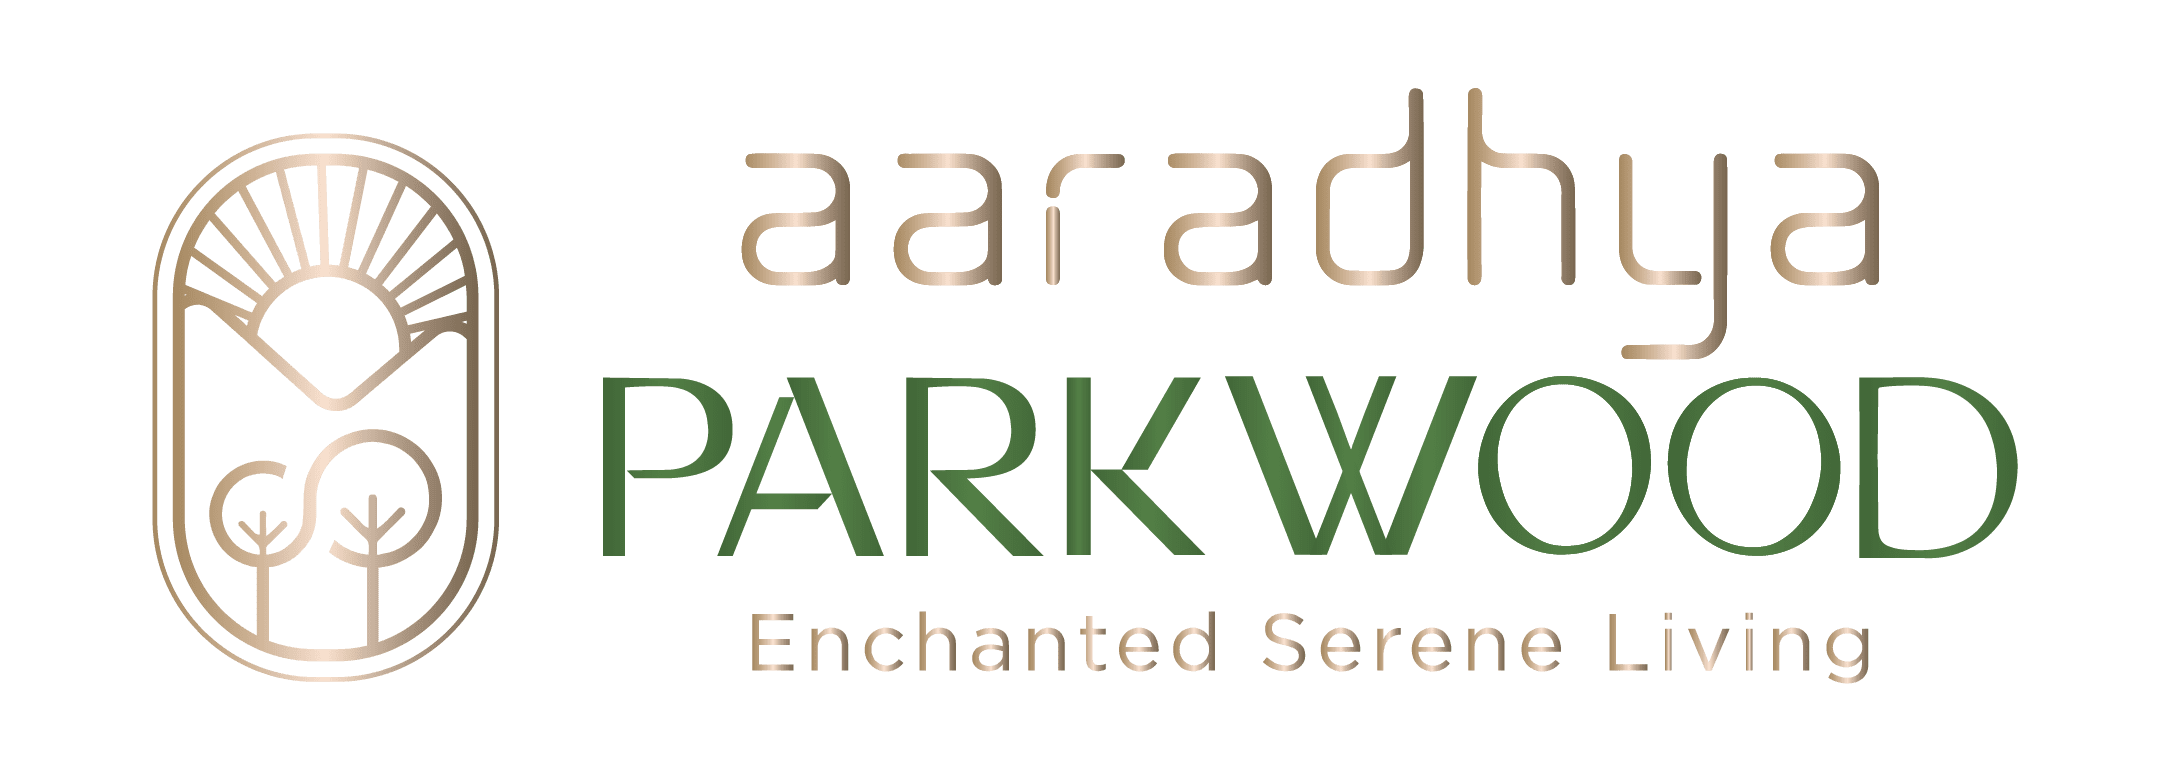 aaradhya parkwood